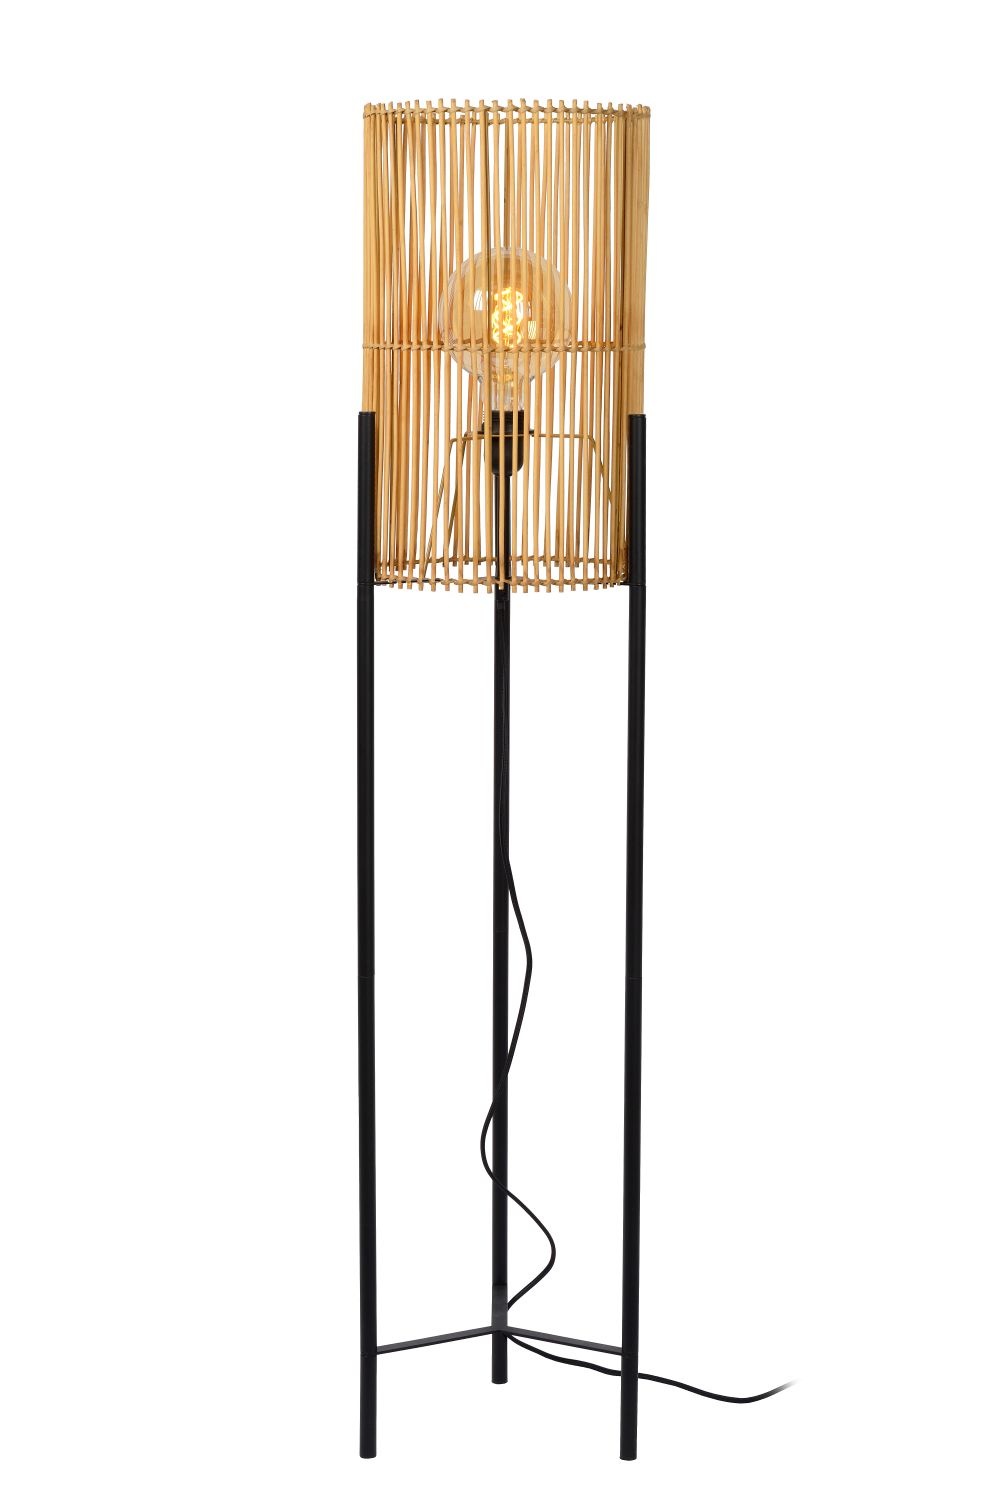 Skandinavische Stehlampe zylindrisch schwarz mit hellem Holz E27 |